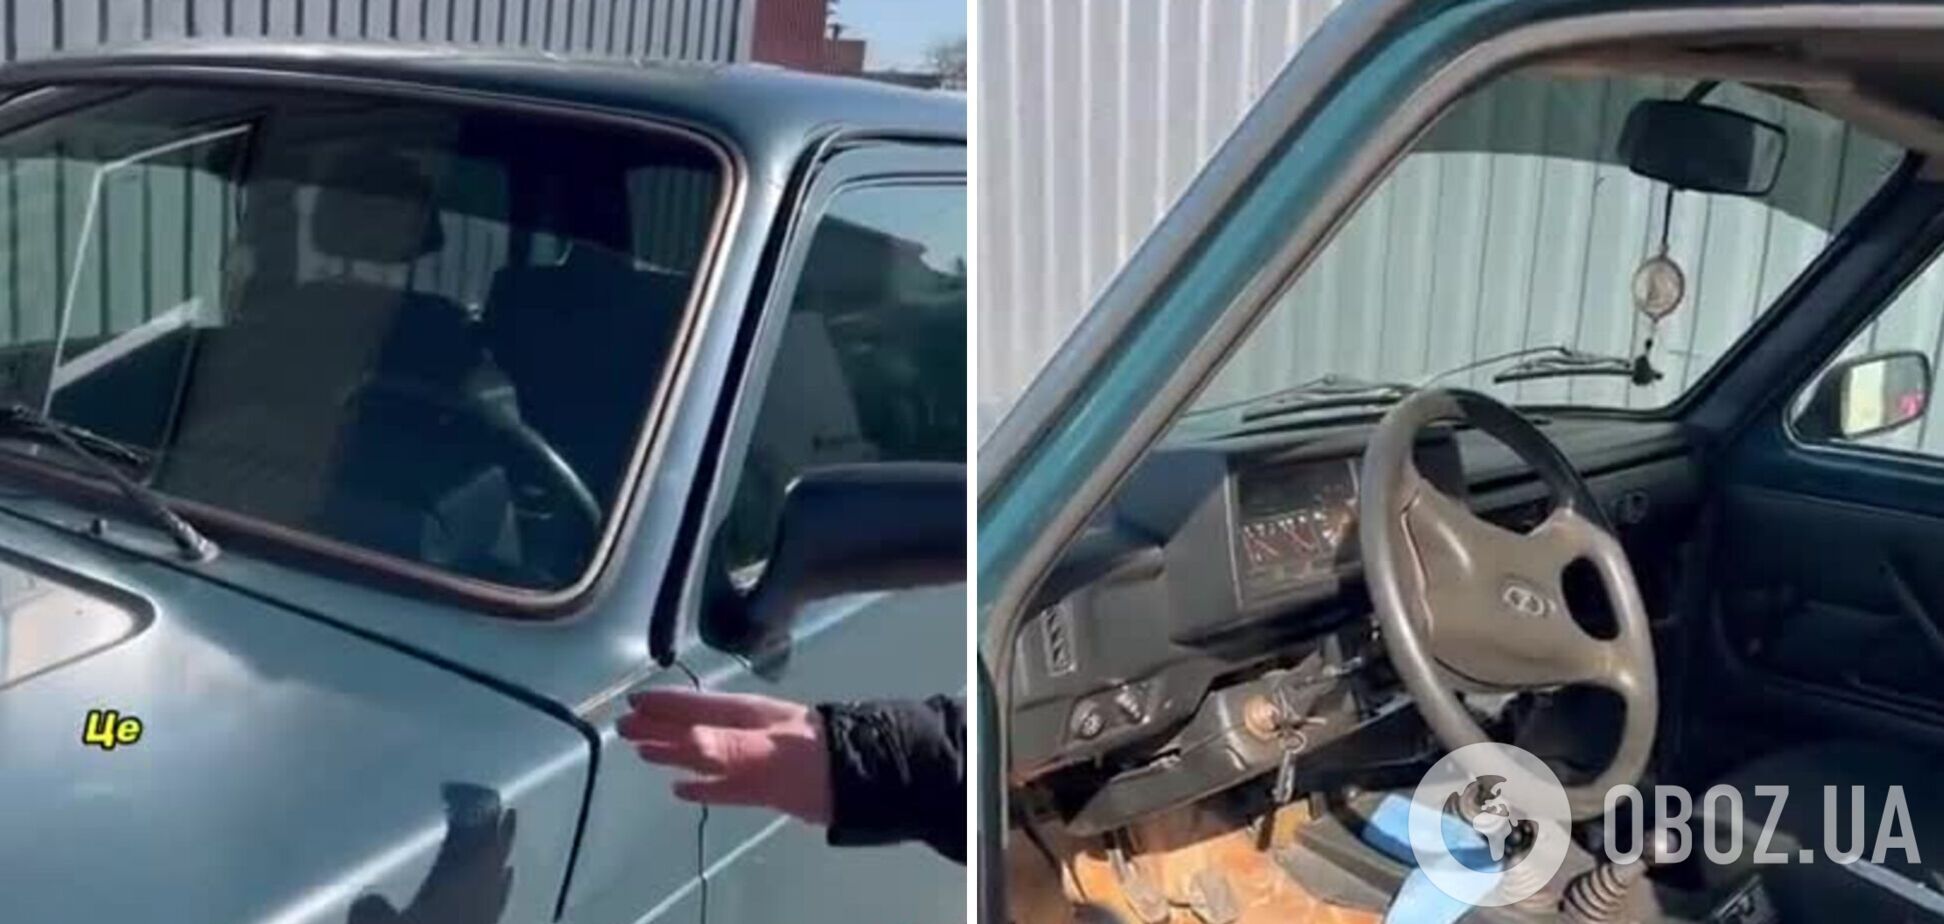 'Нас не перемогти': батько загиблого воїна ЗСУ передав українським військовим улюблене авто сина. Відео